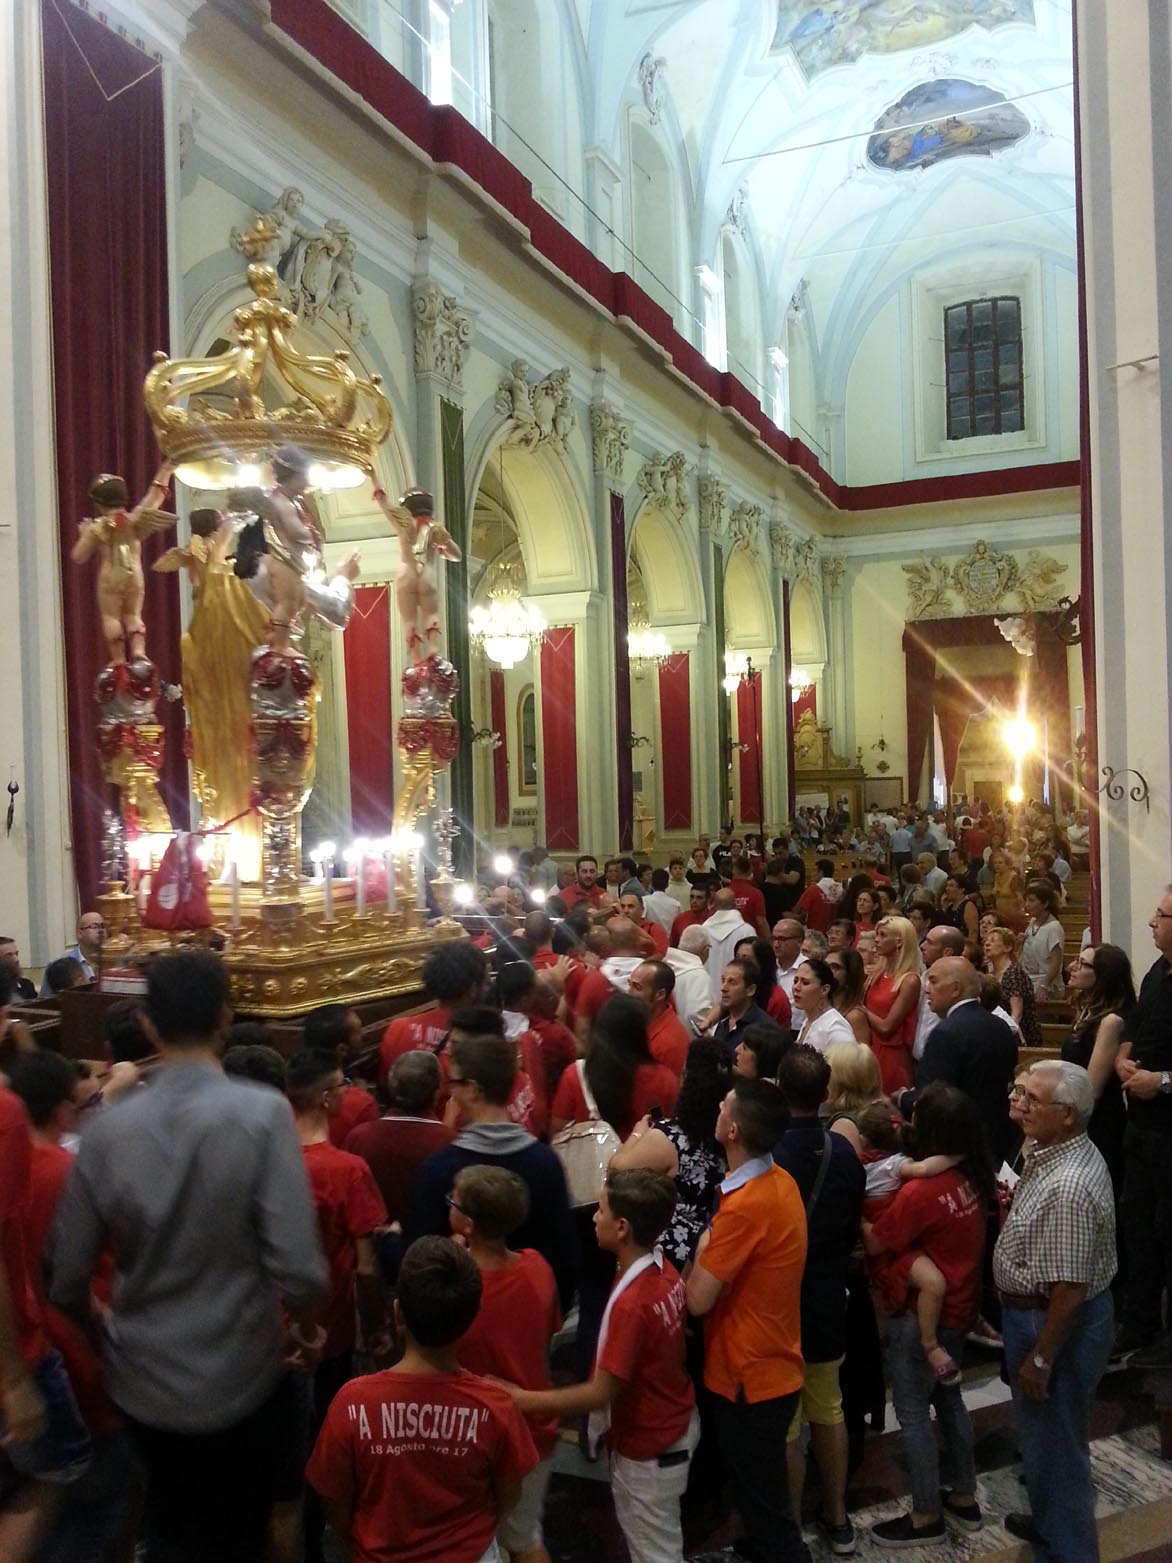 La navata della chiesa del SS Salvatore con i fedeli